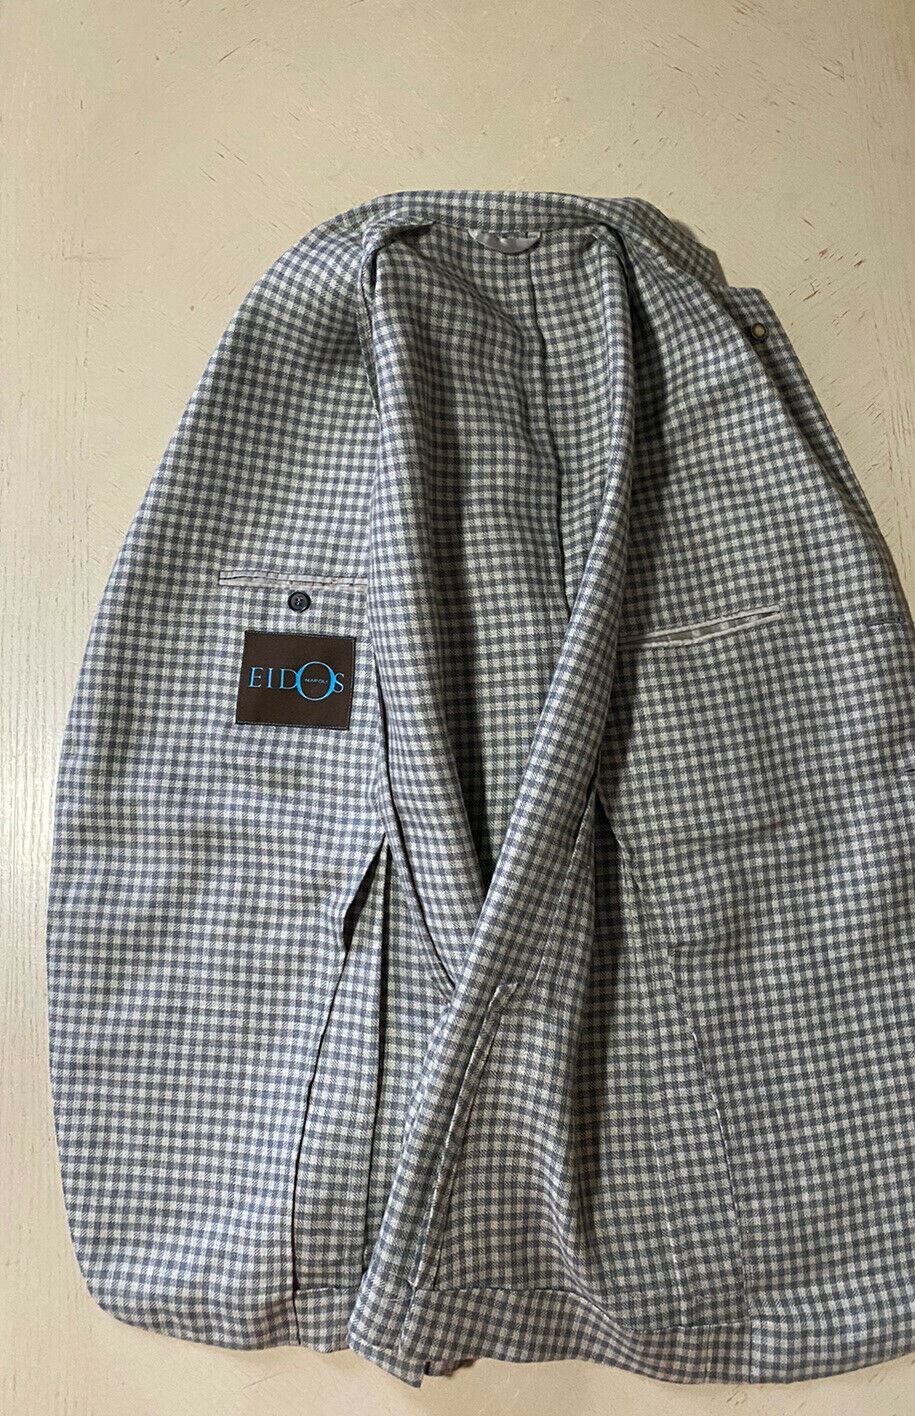 NWT $2100 Eidos Men’s Jacket Blazer  Gray Gingh 40 US ( 50 Eu ) Italy